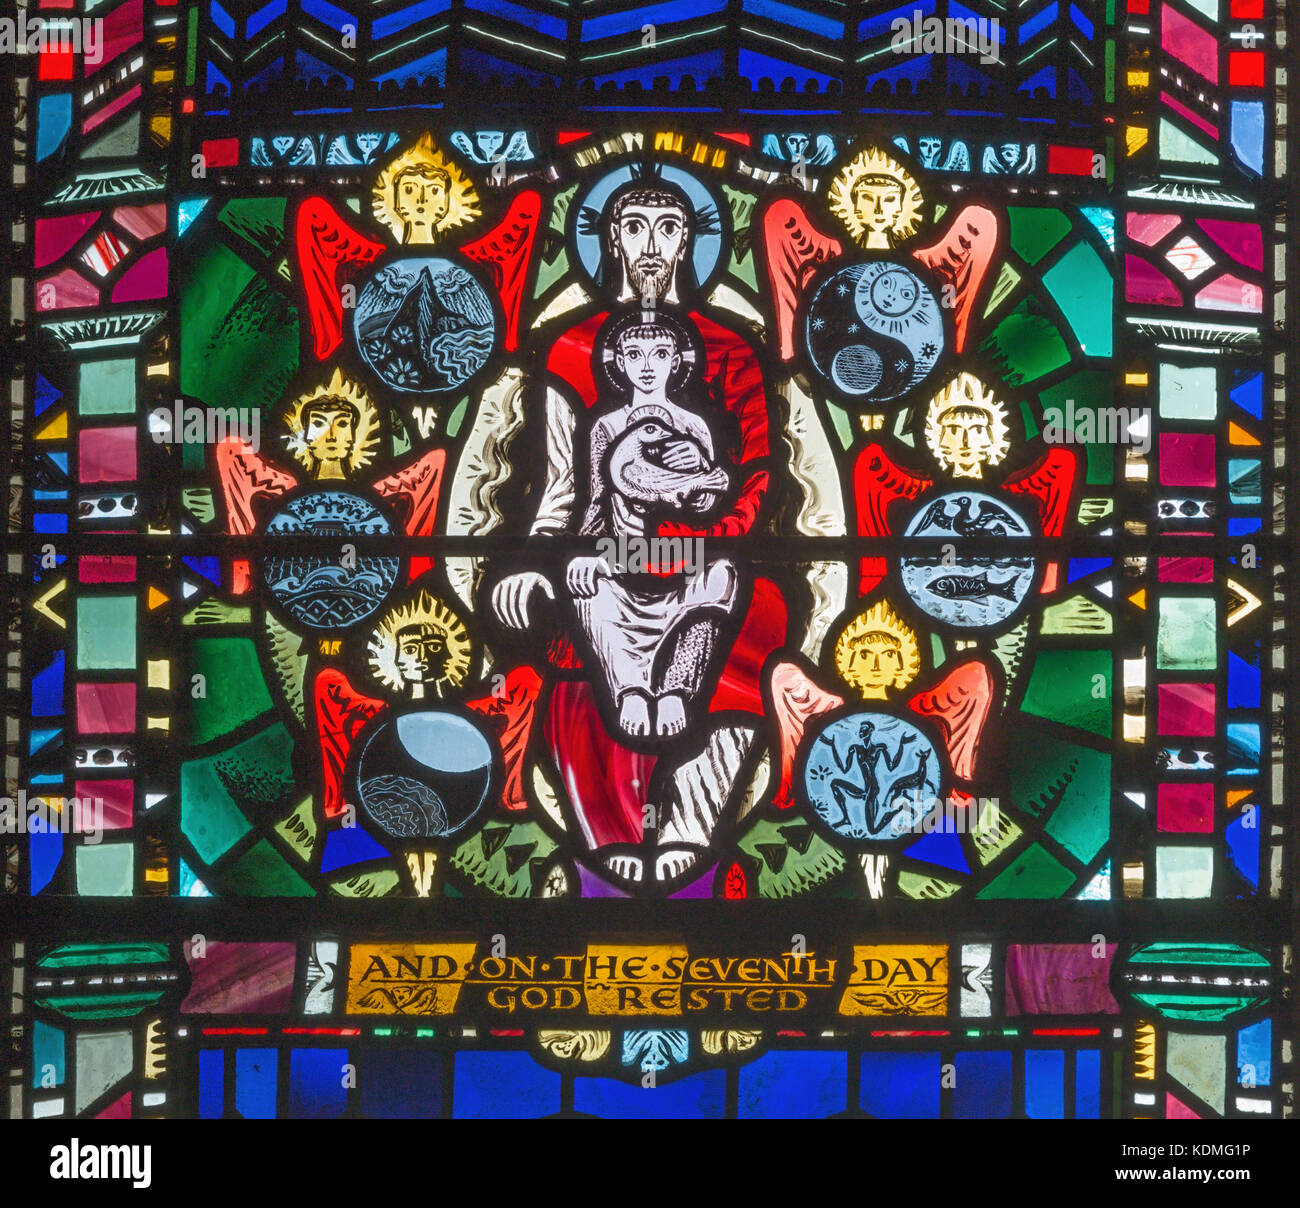 Londra, Gran Bretagna - 16 settembre 2017: il vetro macchiato di creazione e simbolico in Trinity Church St etheldreda da Charles blakeman. Foto Stock